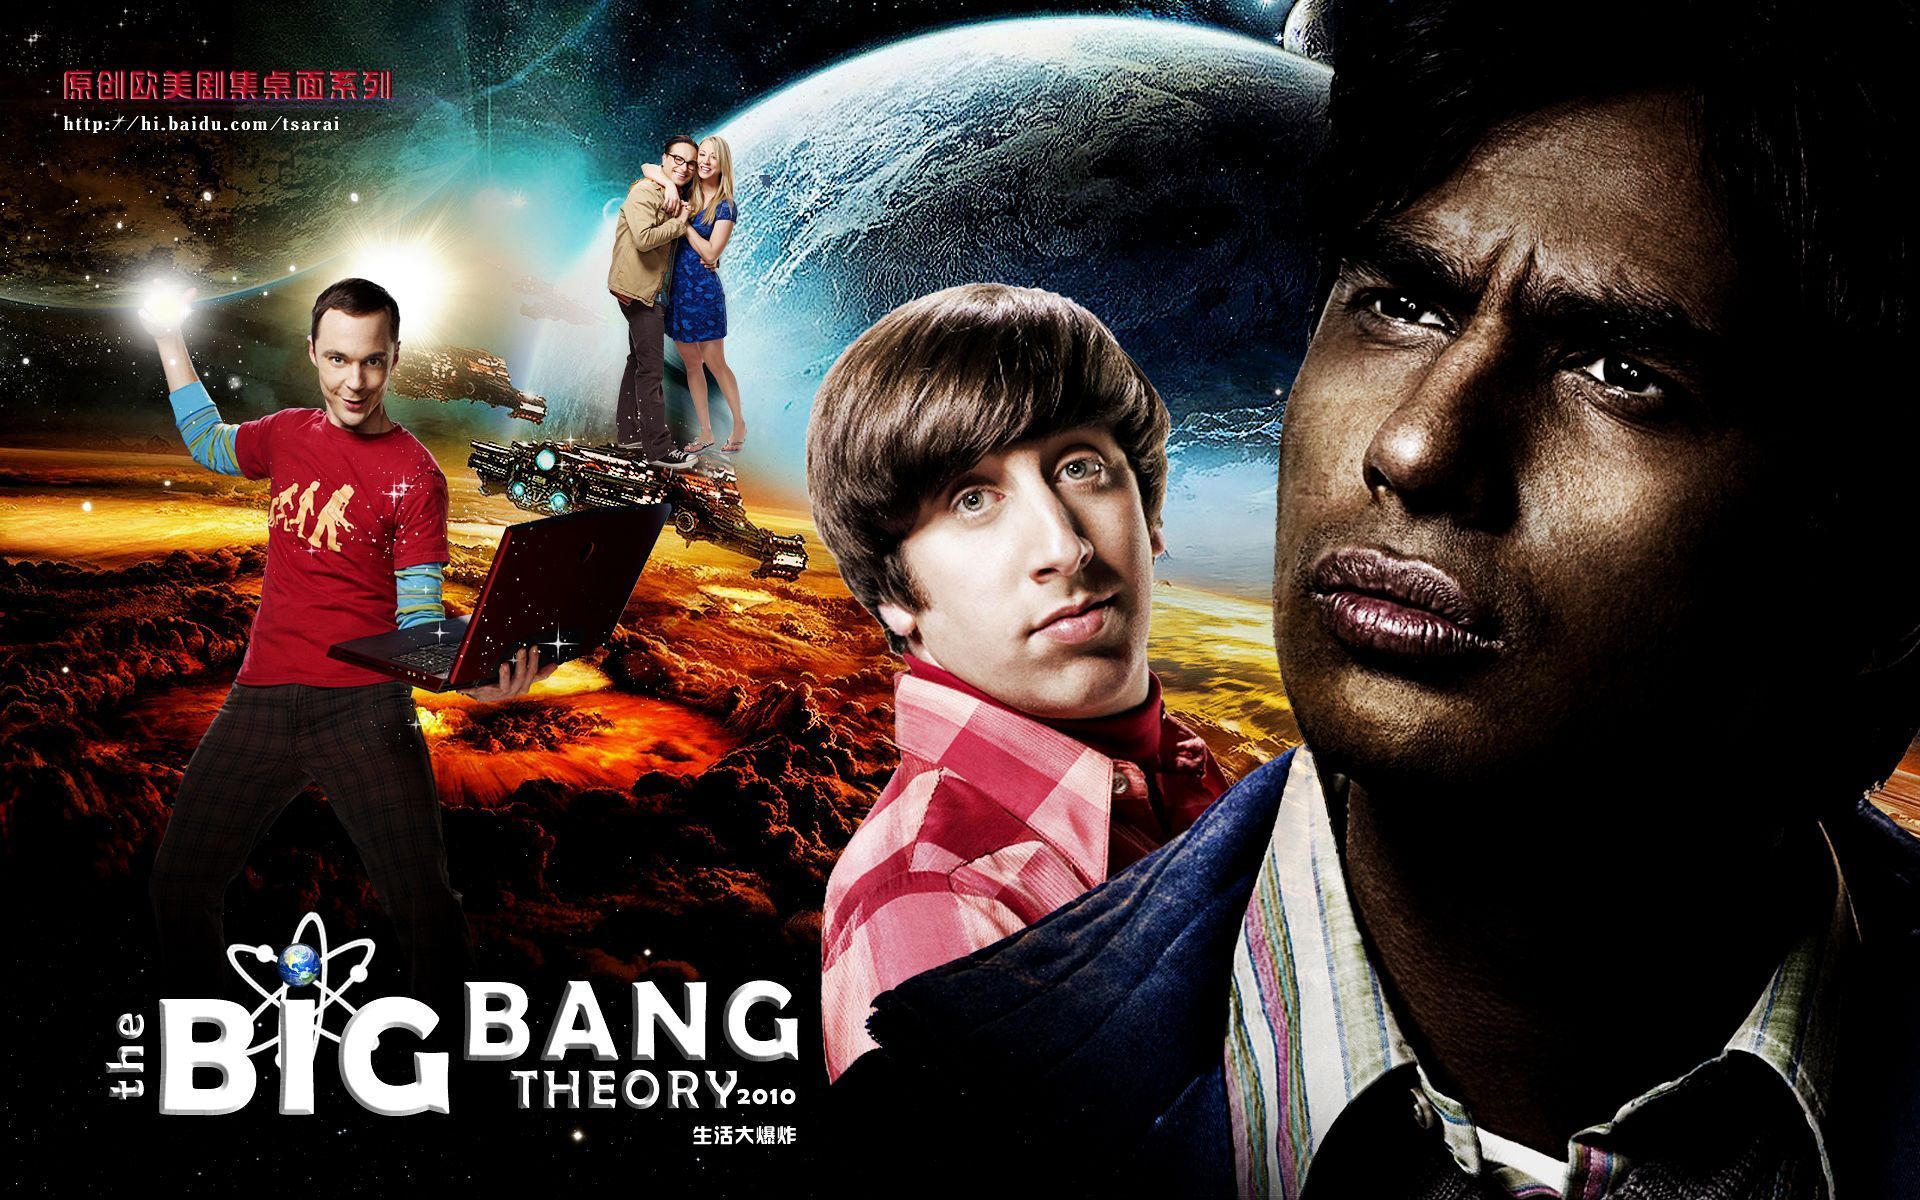 The Big Bang Theory Image HD